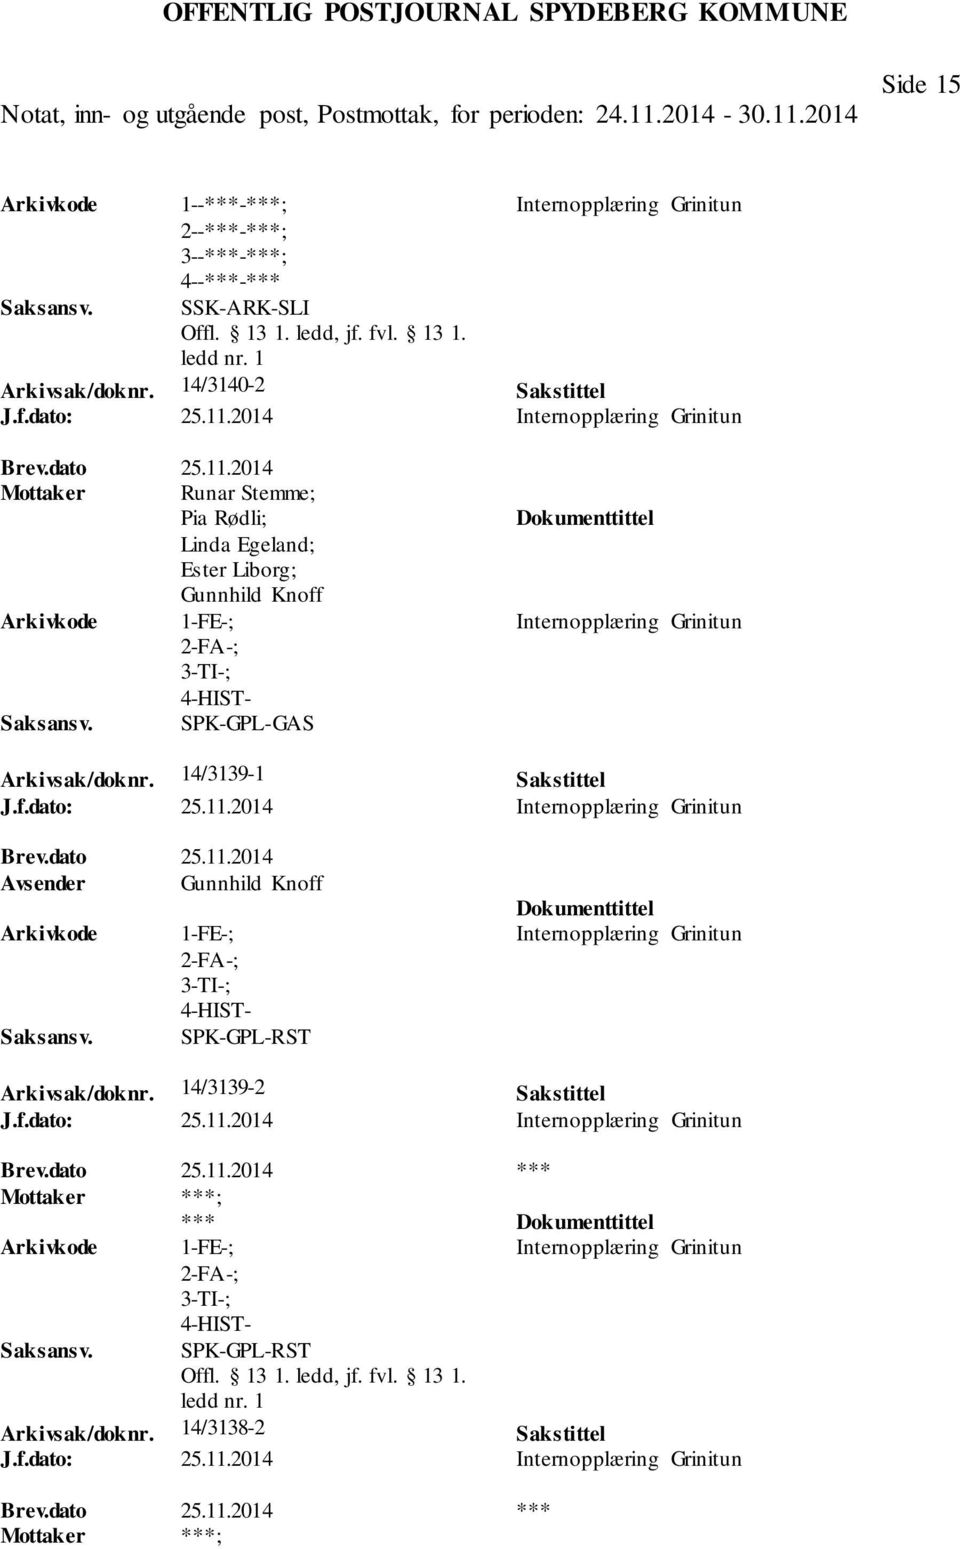 2014 Mottaker Runar Stemme; Pia Rødli; Linda Egeland; Ester Liborg; Gunnhild Knoff 1-FE-; 3-TI-; SPK-GPL-GAS Internopplæring Grinitun Arkivsak/doknr. 14/3139-1 Sakstittel J.f.dato: 25.